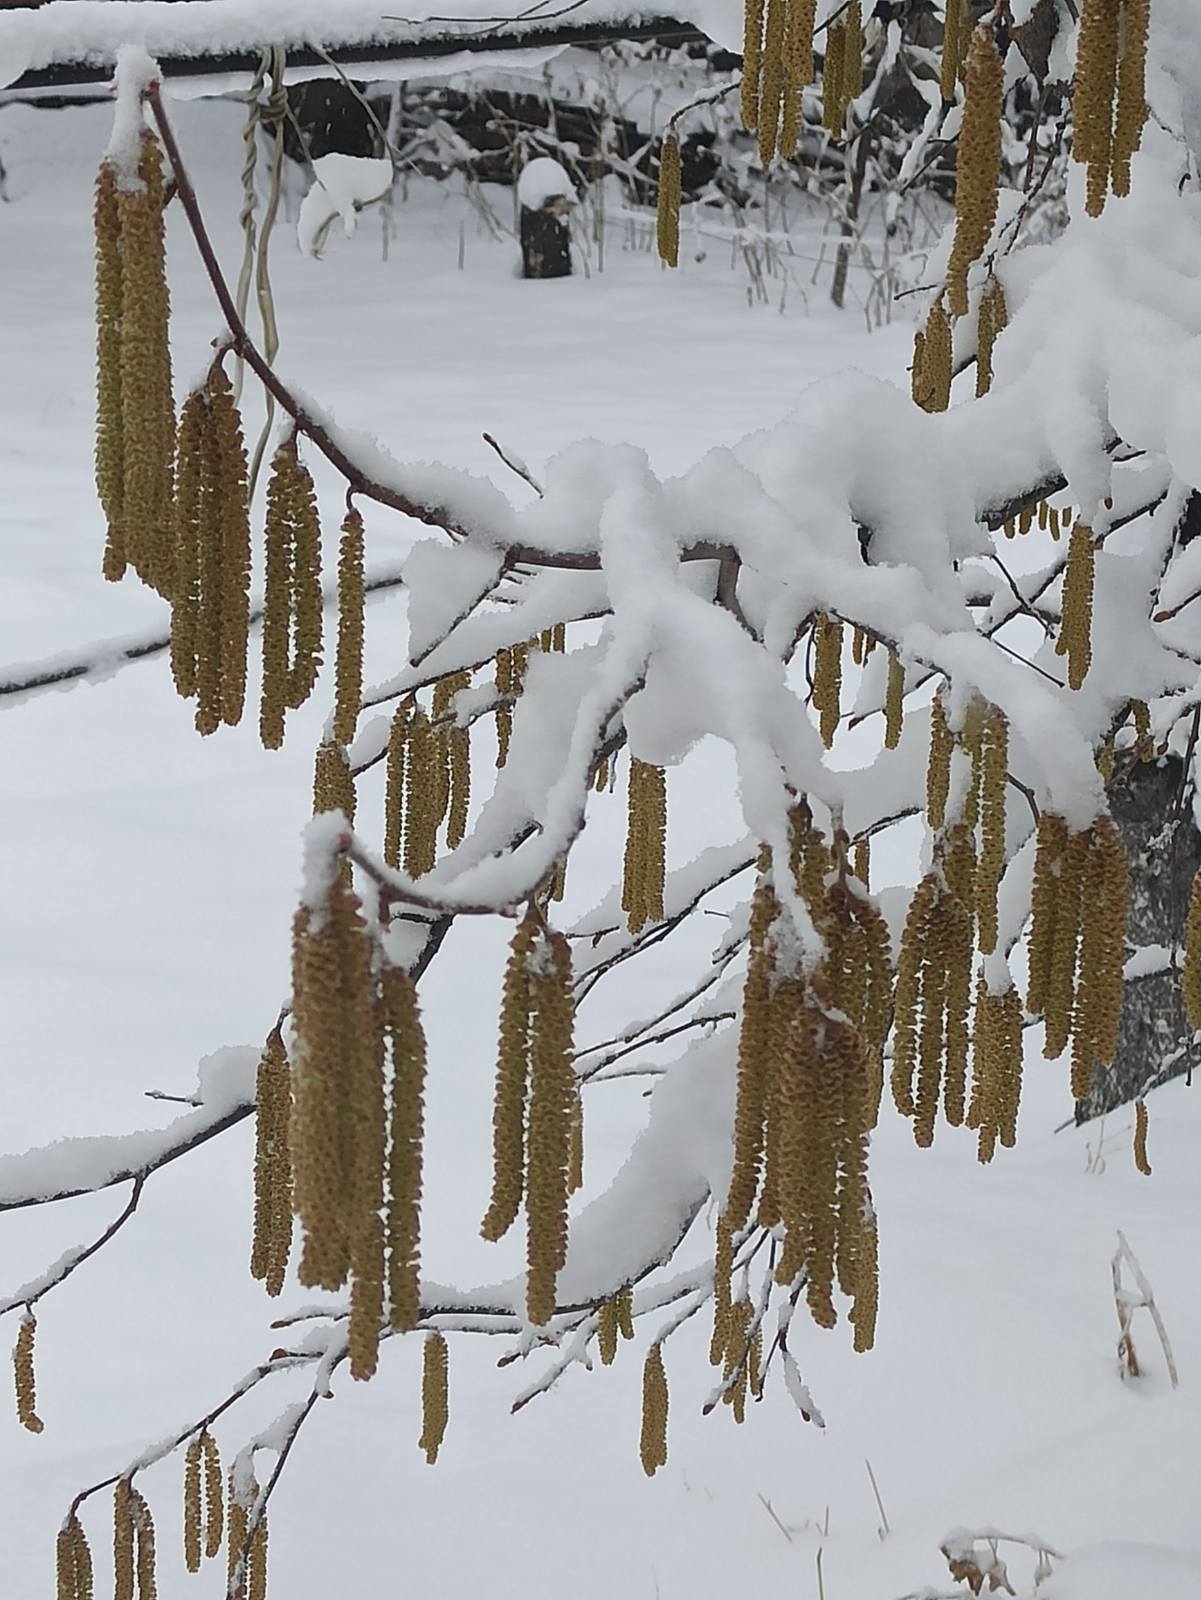 Տավուշի մարզում, Լոռու մարզի Տաշիր և Ալավերդի քաղաքներում տեղում է ձյուն. Լարսը փակ է ձնաբքի պատճառով